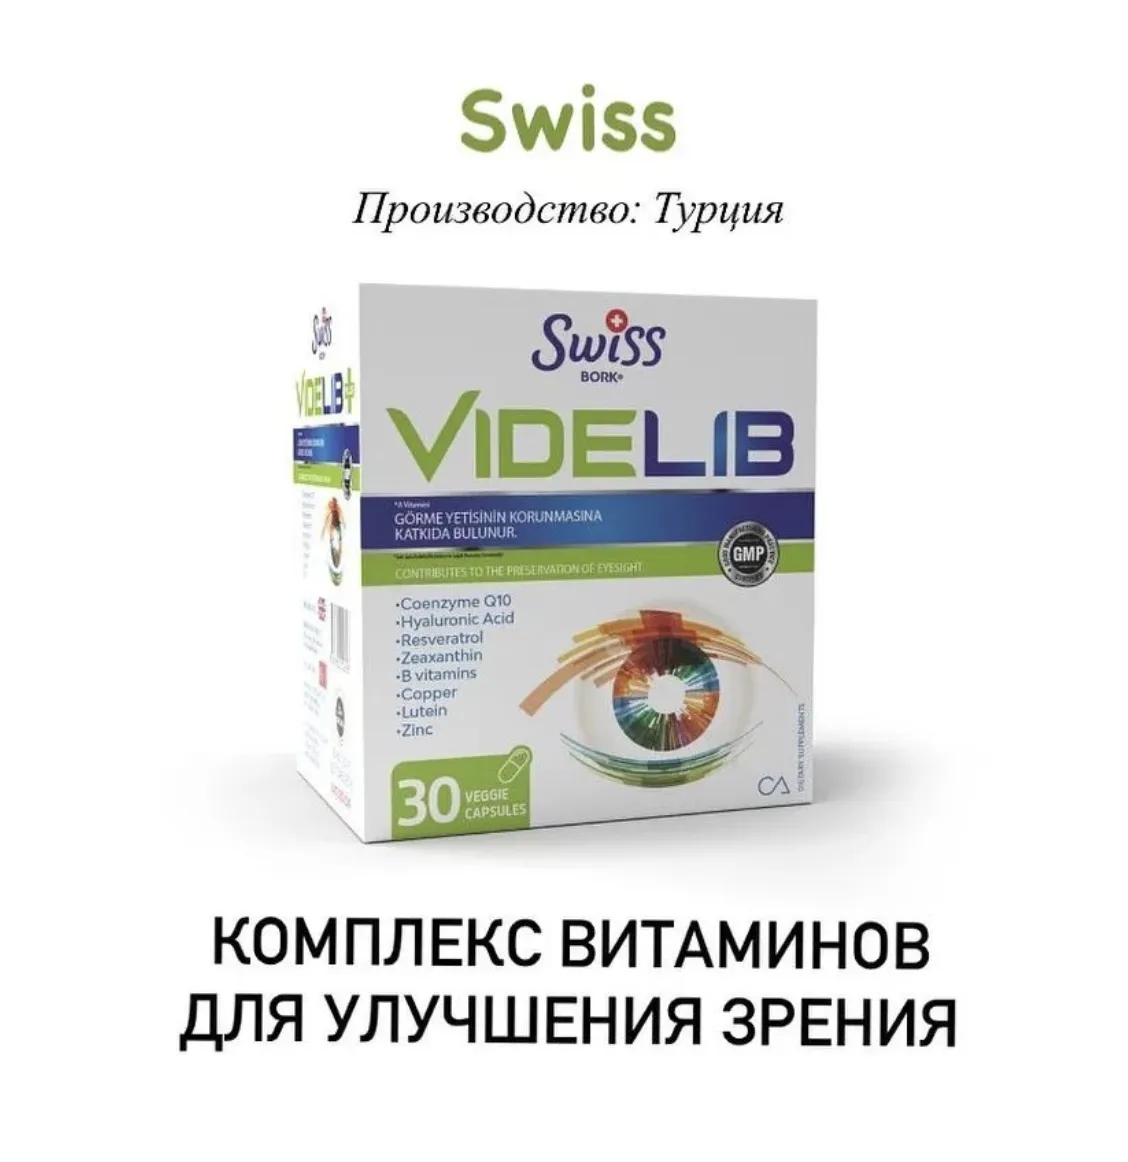 Комплекс витаминов для здоровья глаз и сохранения зрения Swiss bork Videlib#3